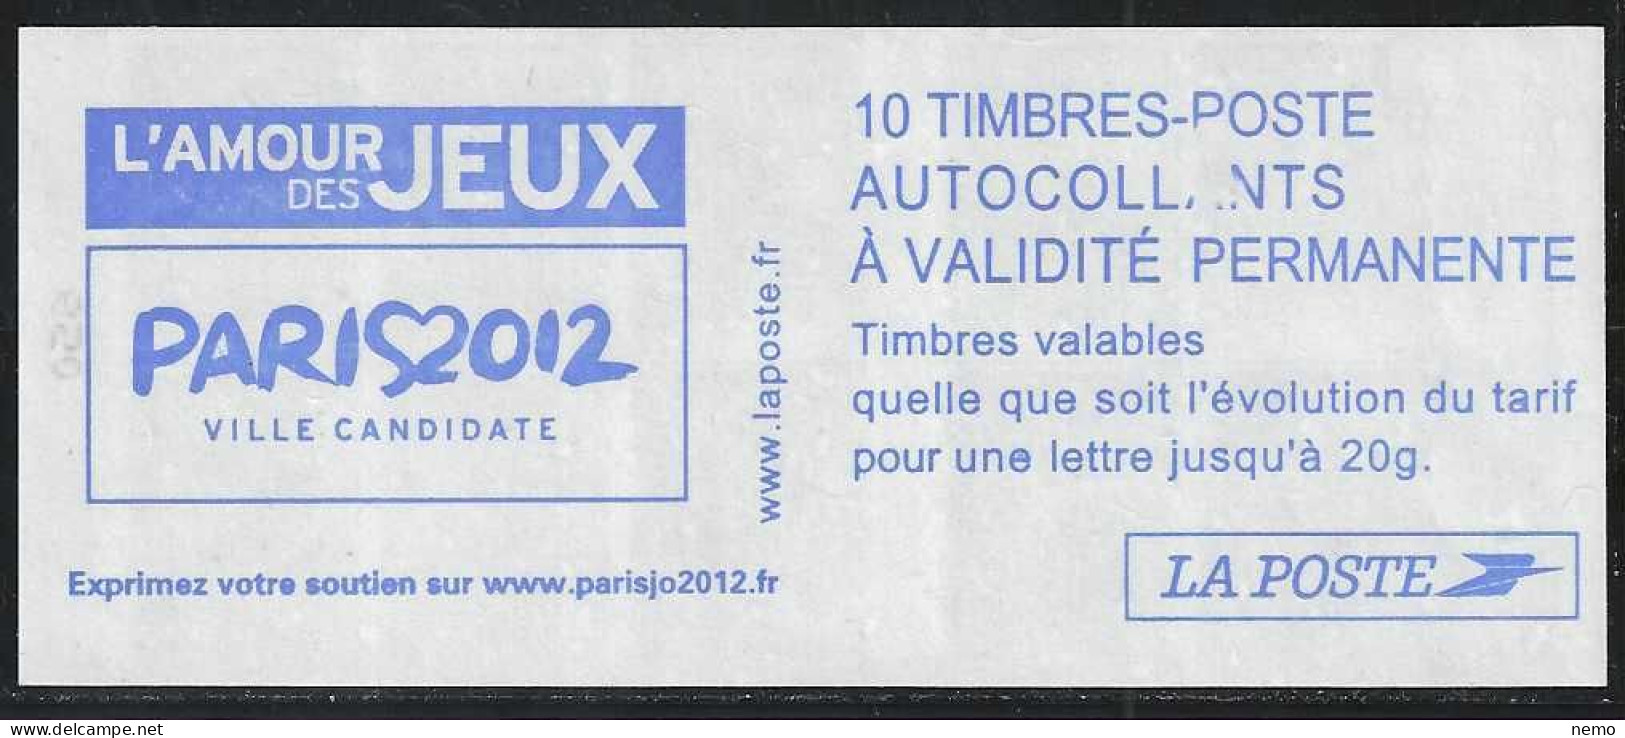 VARIETE COUVERTURE CARNET DATE 01.12.04 MARIANNE DE LAMOUCHE PARIS 2012 - Modernes : 1959-...